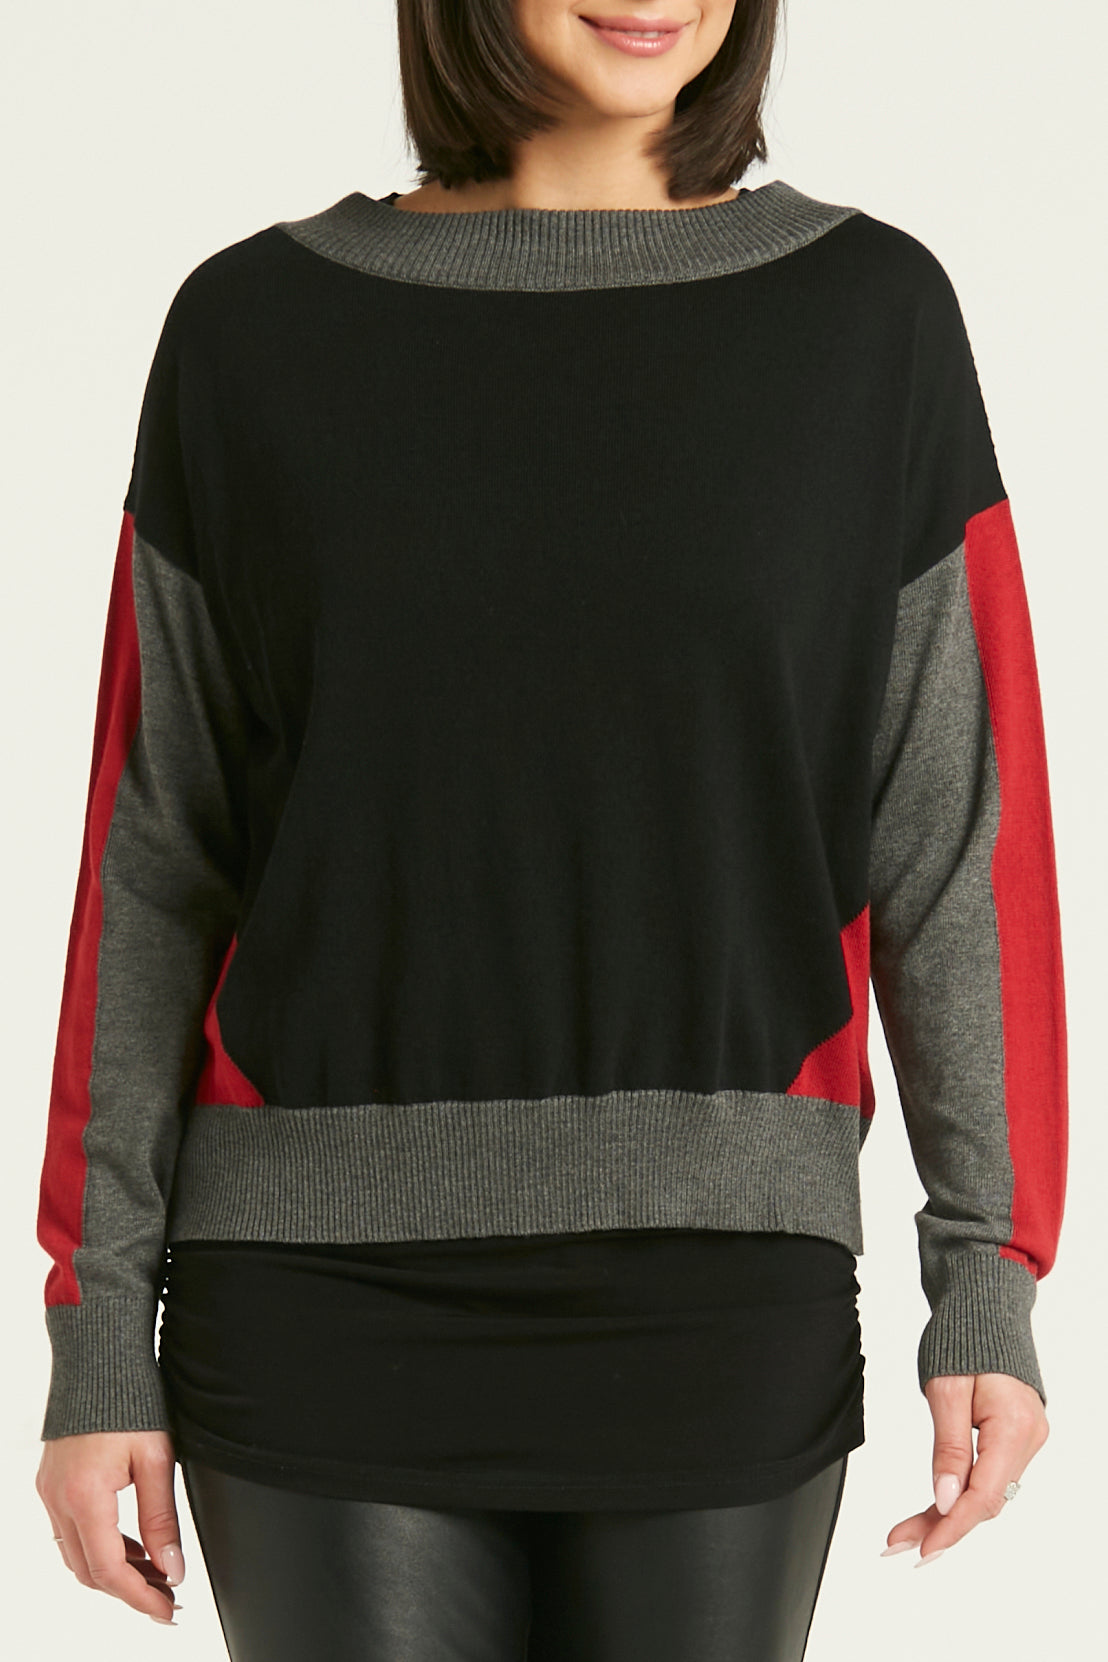 Pima Cotton Color Block Crewneck Sweater